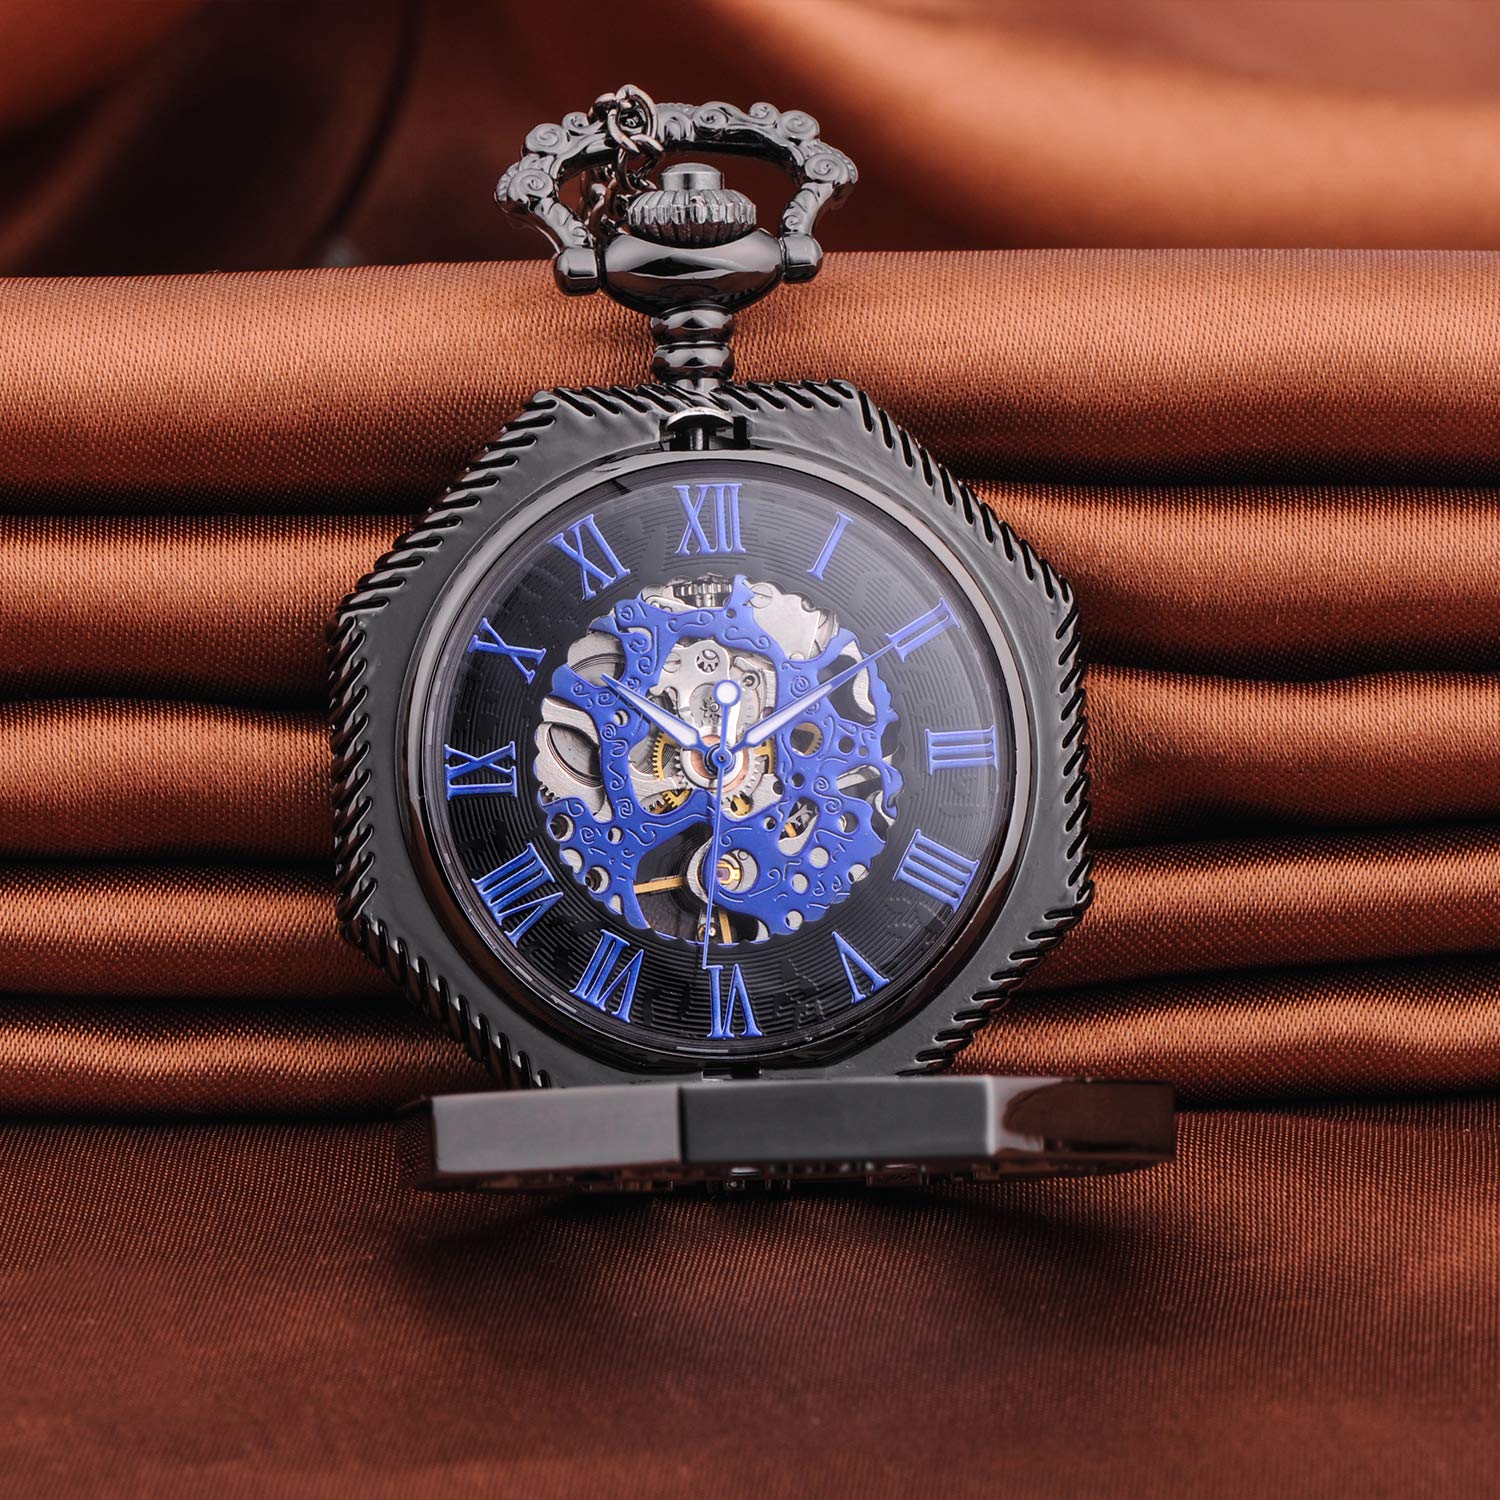 Unendlich U Mens Mechanical Pocket Watch, Vintage Roman Numerals Dial Octagonal Stainless Steel Bronze Case Pocket Watch for Men Women